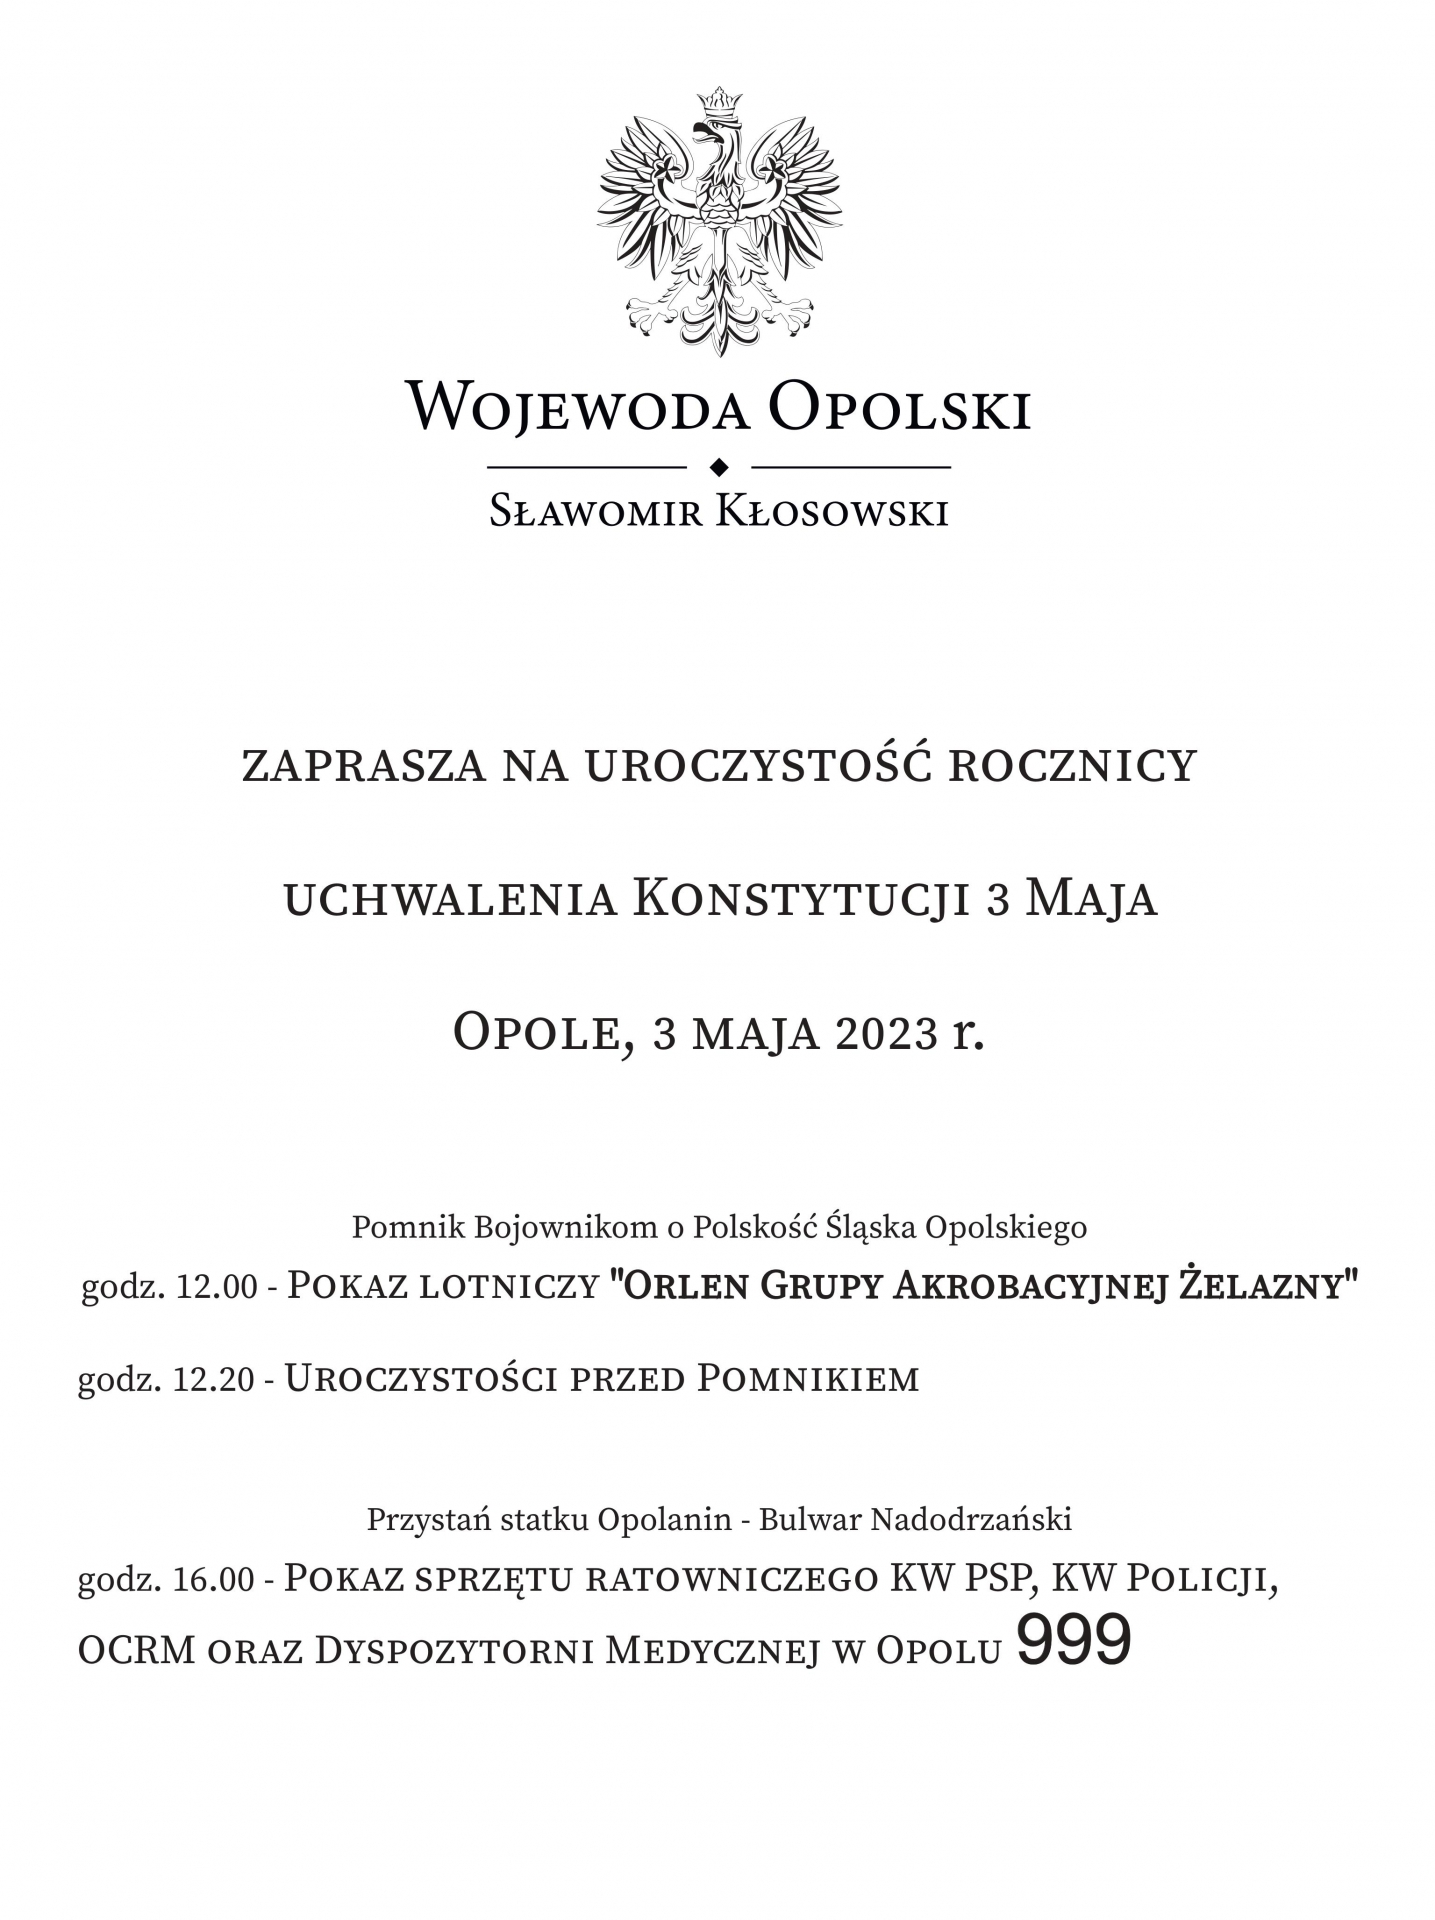 Zdjęcie do artykułu: Zaproszenie Wojewody Opolskiego na uroczystość Rocznicy Uchwalenia Konstytucji 3 Maja. 